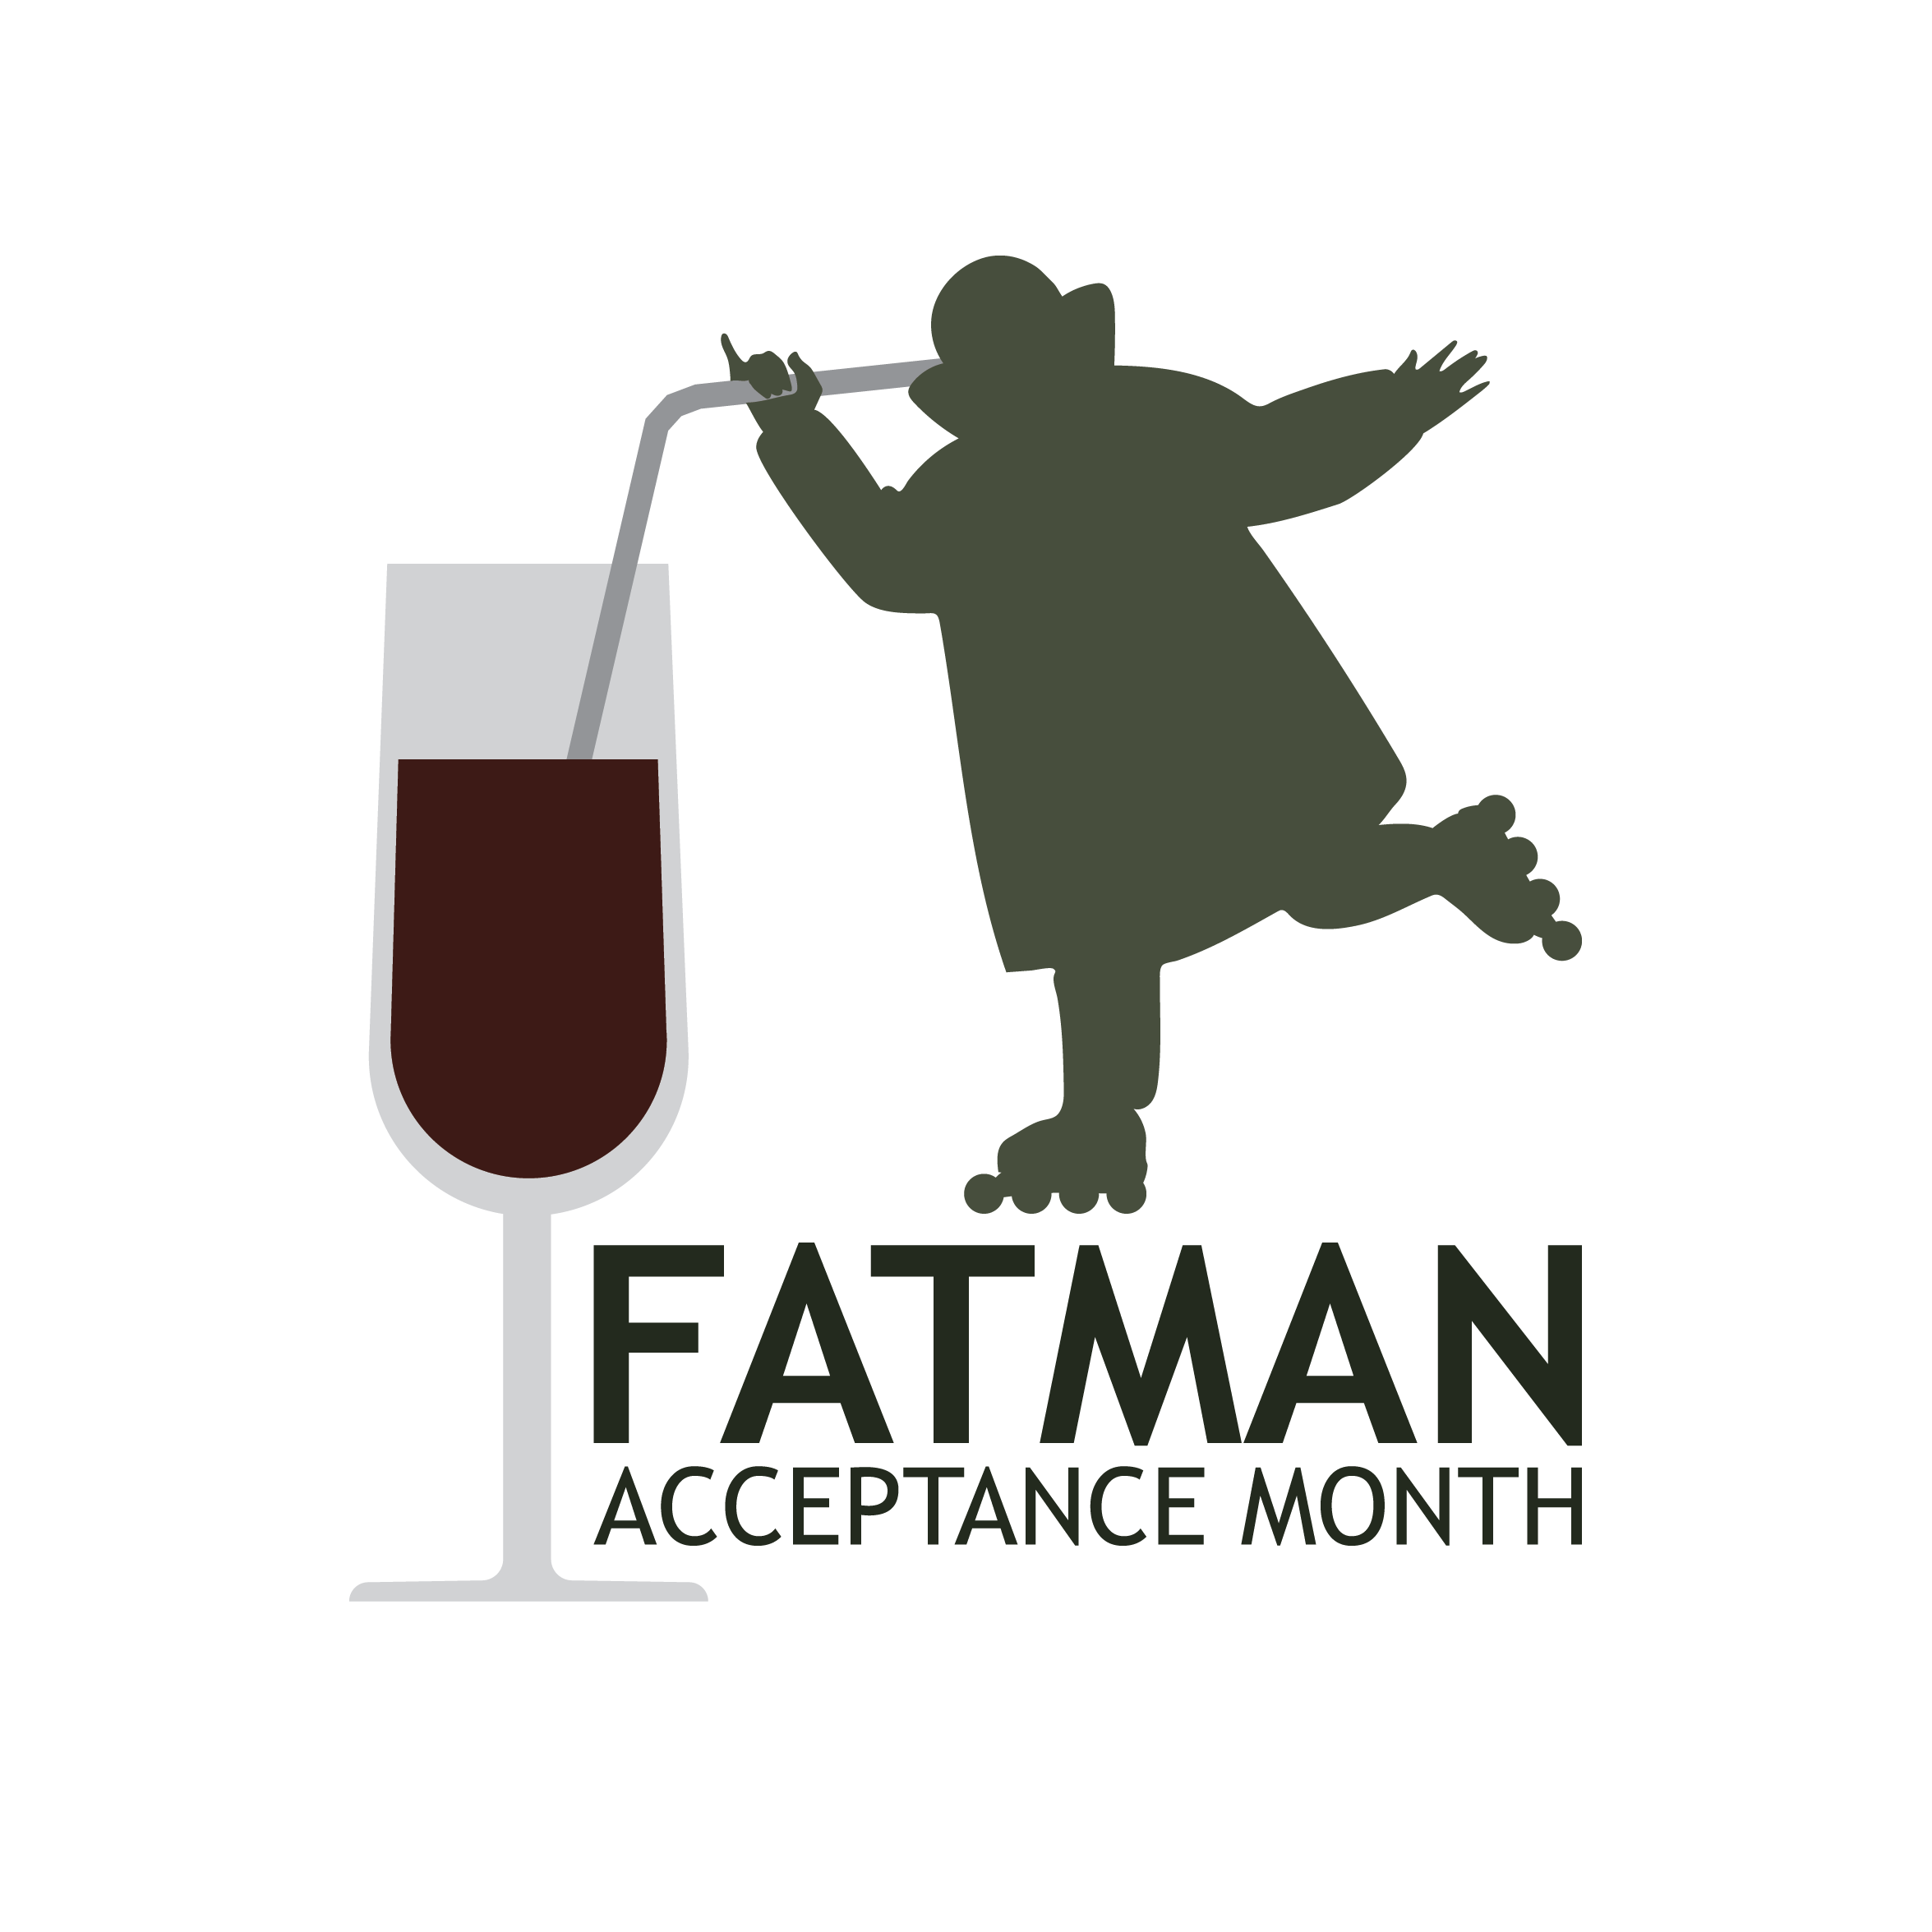 Fatman Acceptance Month fan art contest